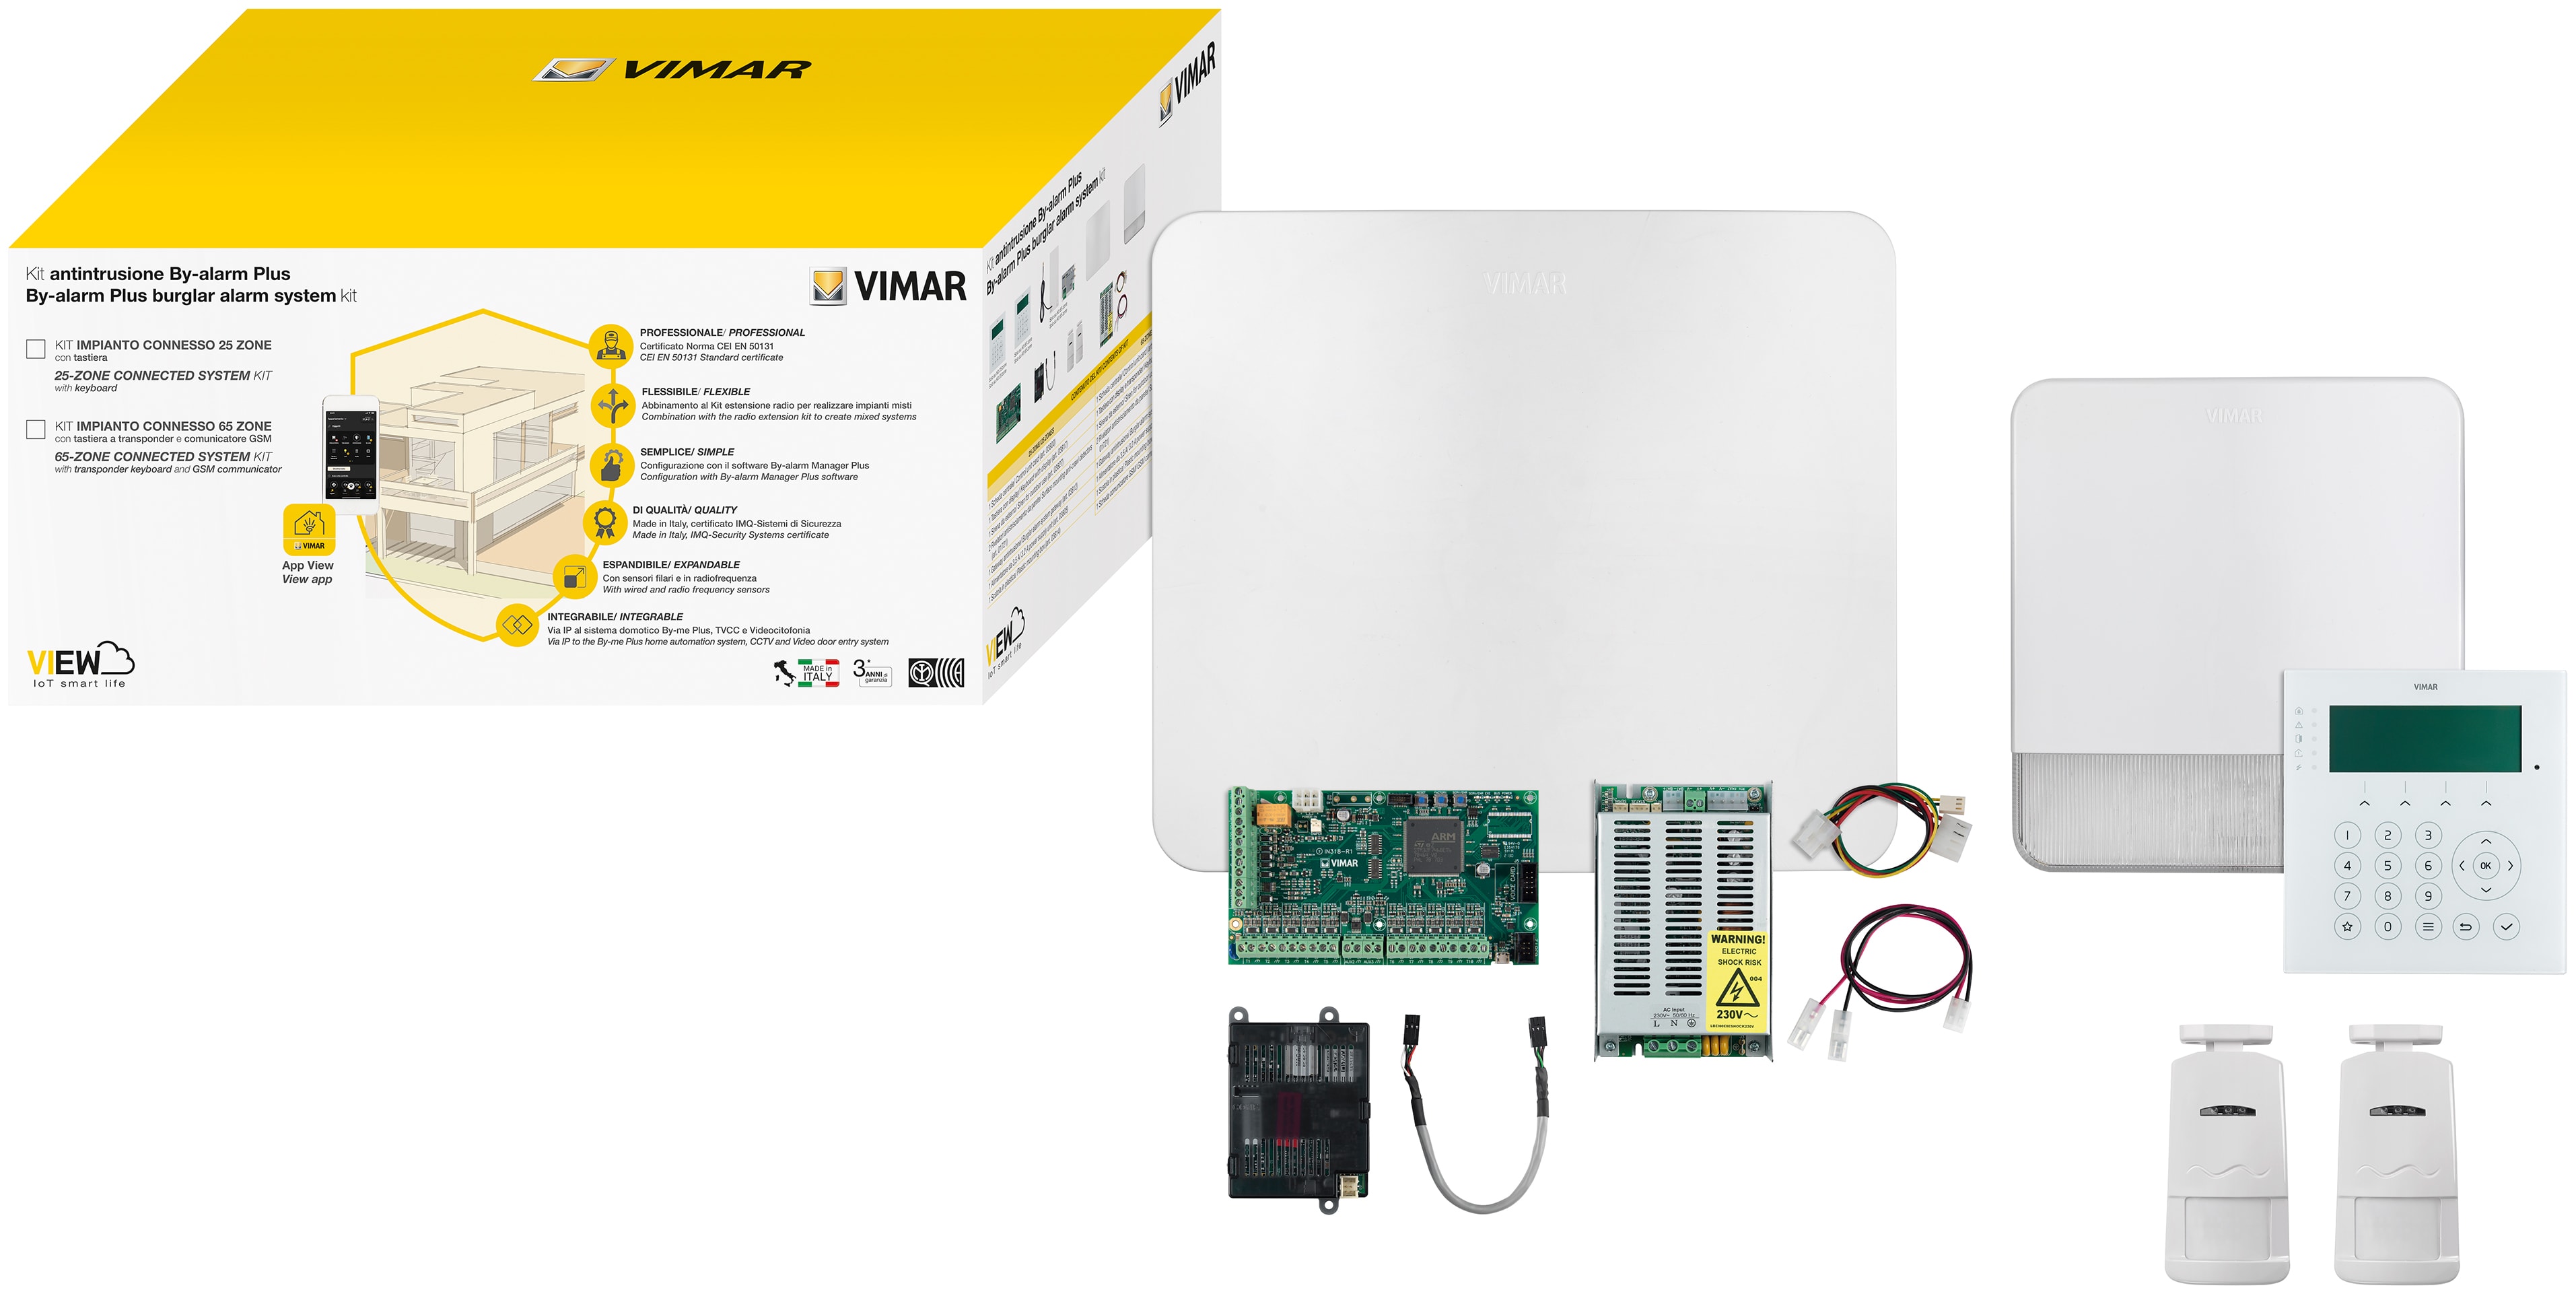 VIMAR S.P.A. - VIW0K03800.02 BY-ALARM PLUS KIT 25 ZONE + GATEWAY IP